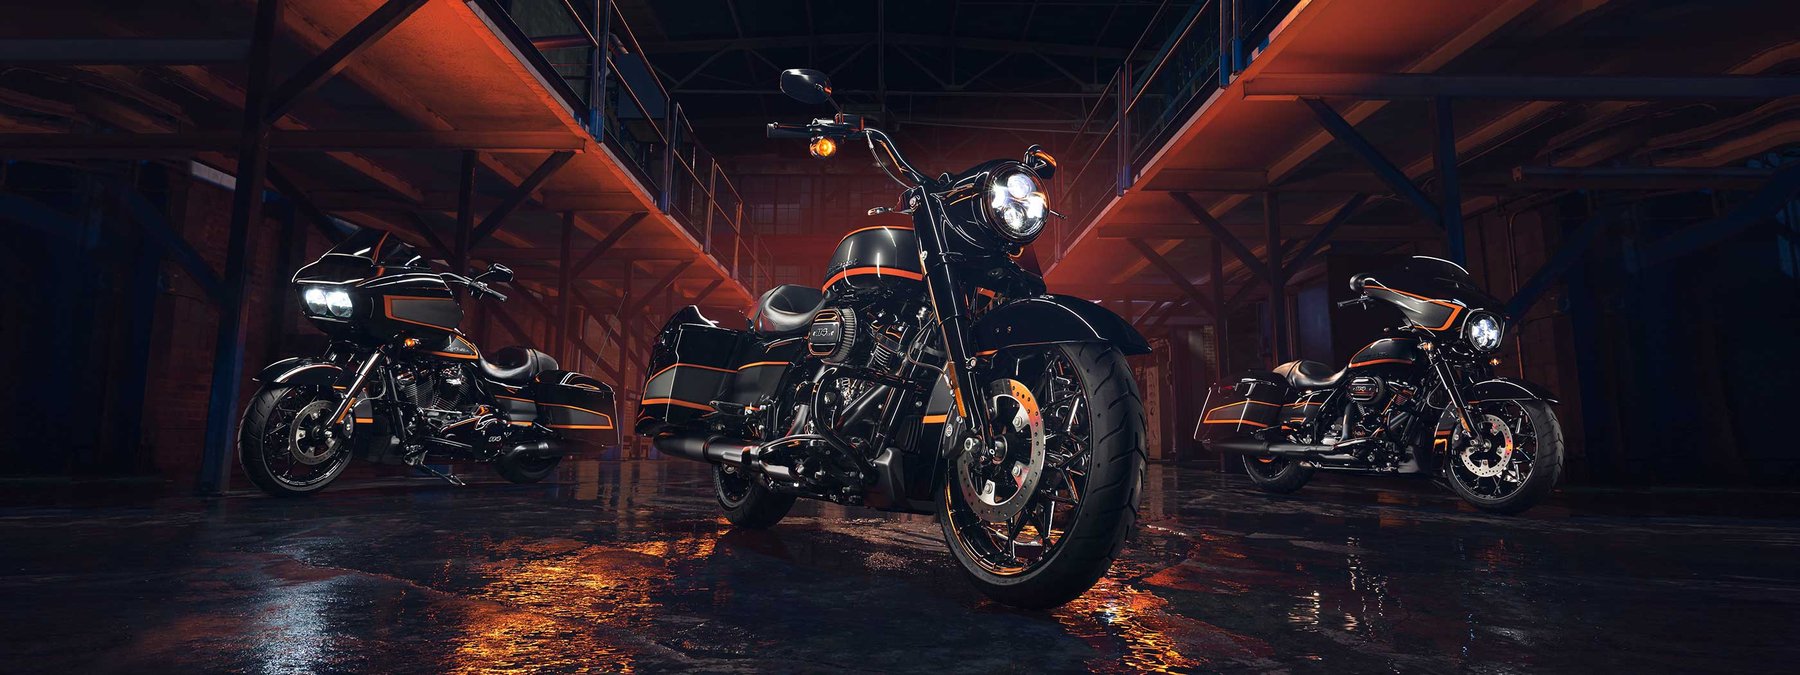 Egyedi Apex fényezés Harley-Davidson motorkerékpárokon